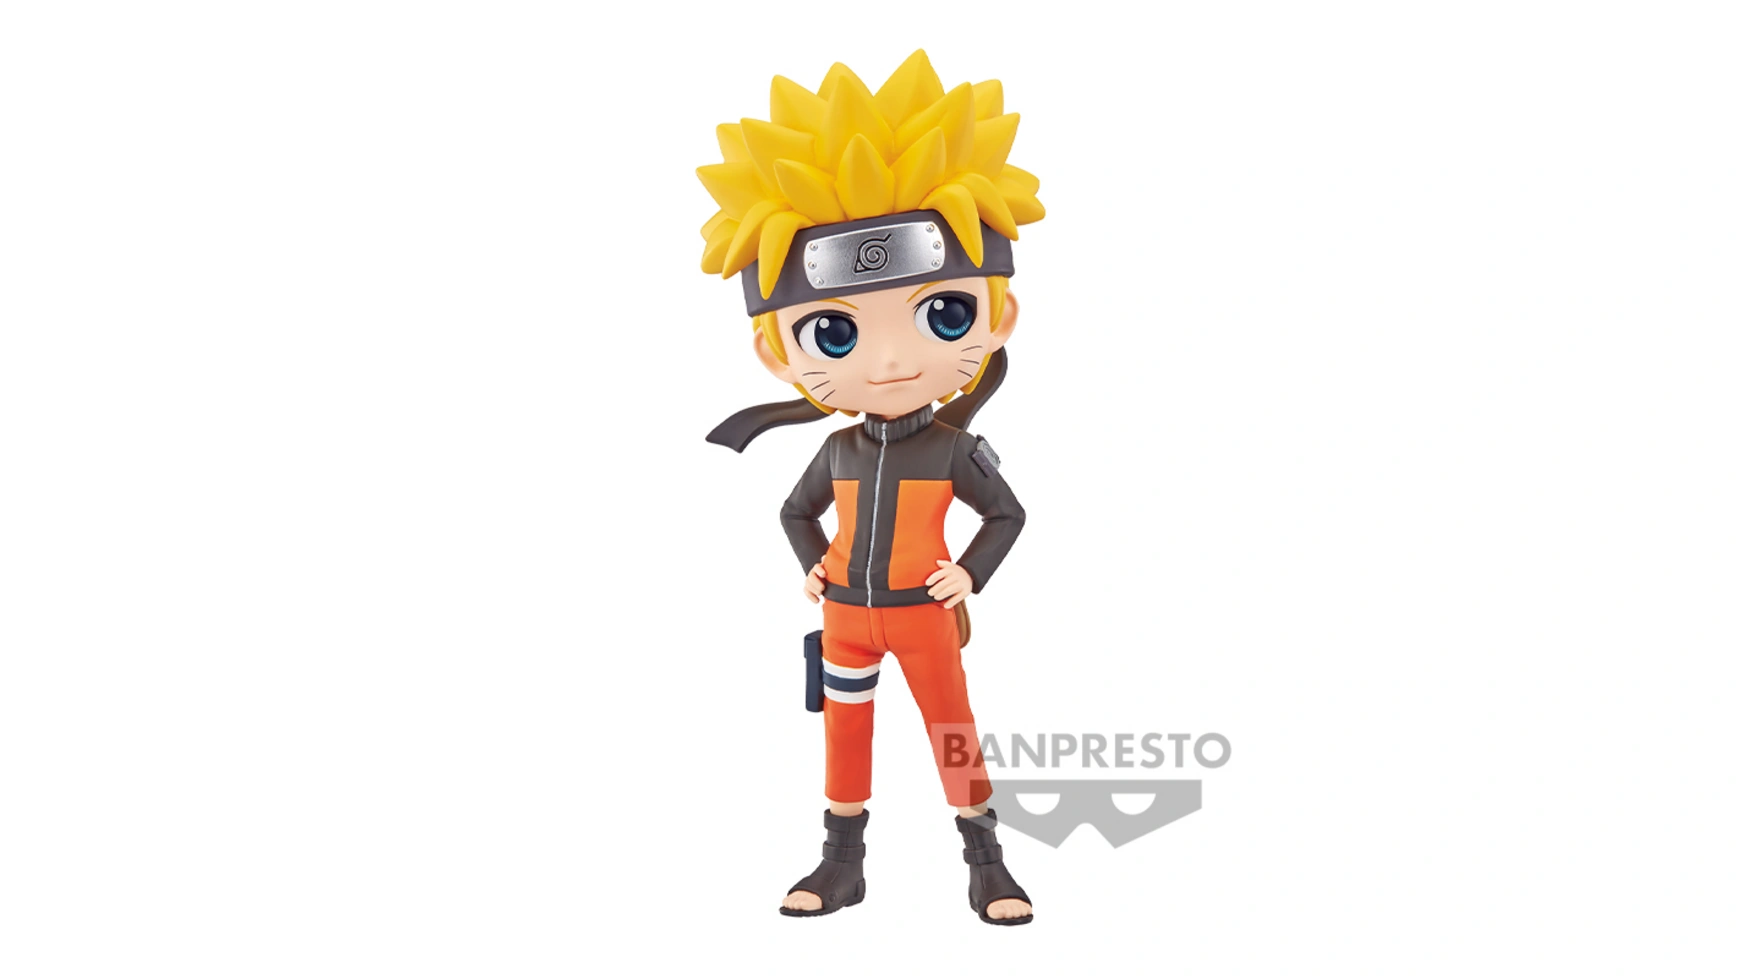 Банпресто Q Поскет Naruto Shippuden Наруто Узумаки фигурка q posket pixar characters – toy story – jessie version a 14 см